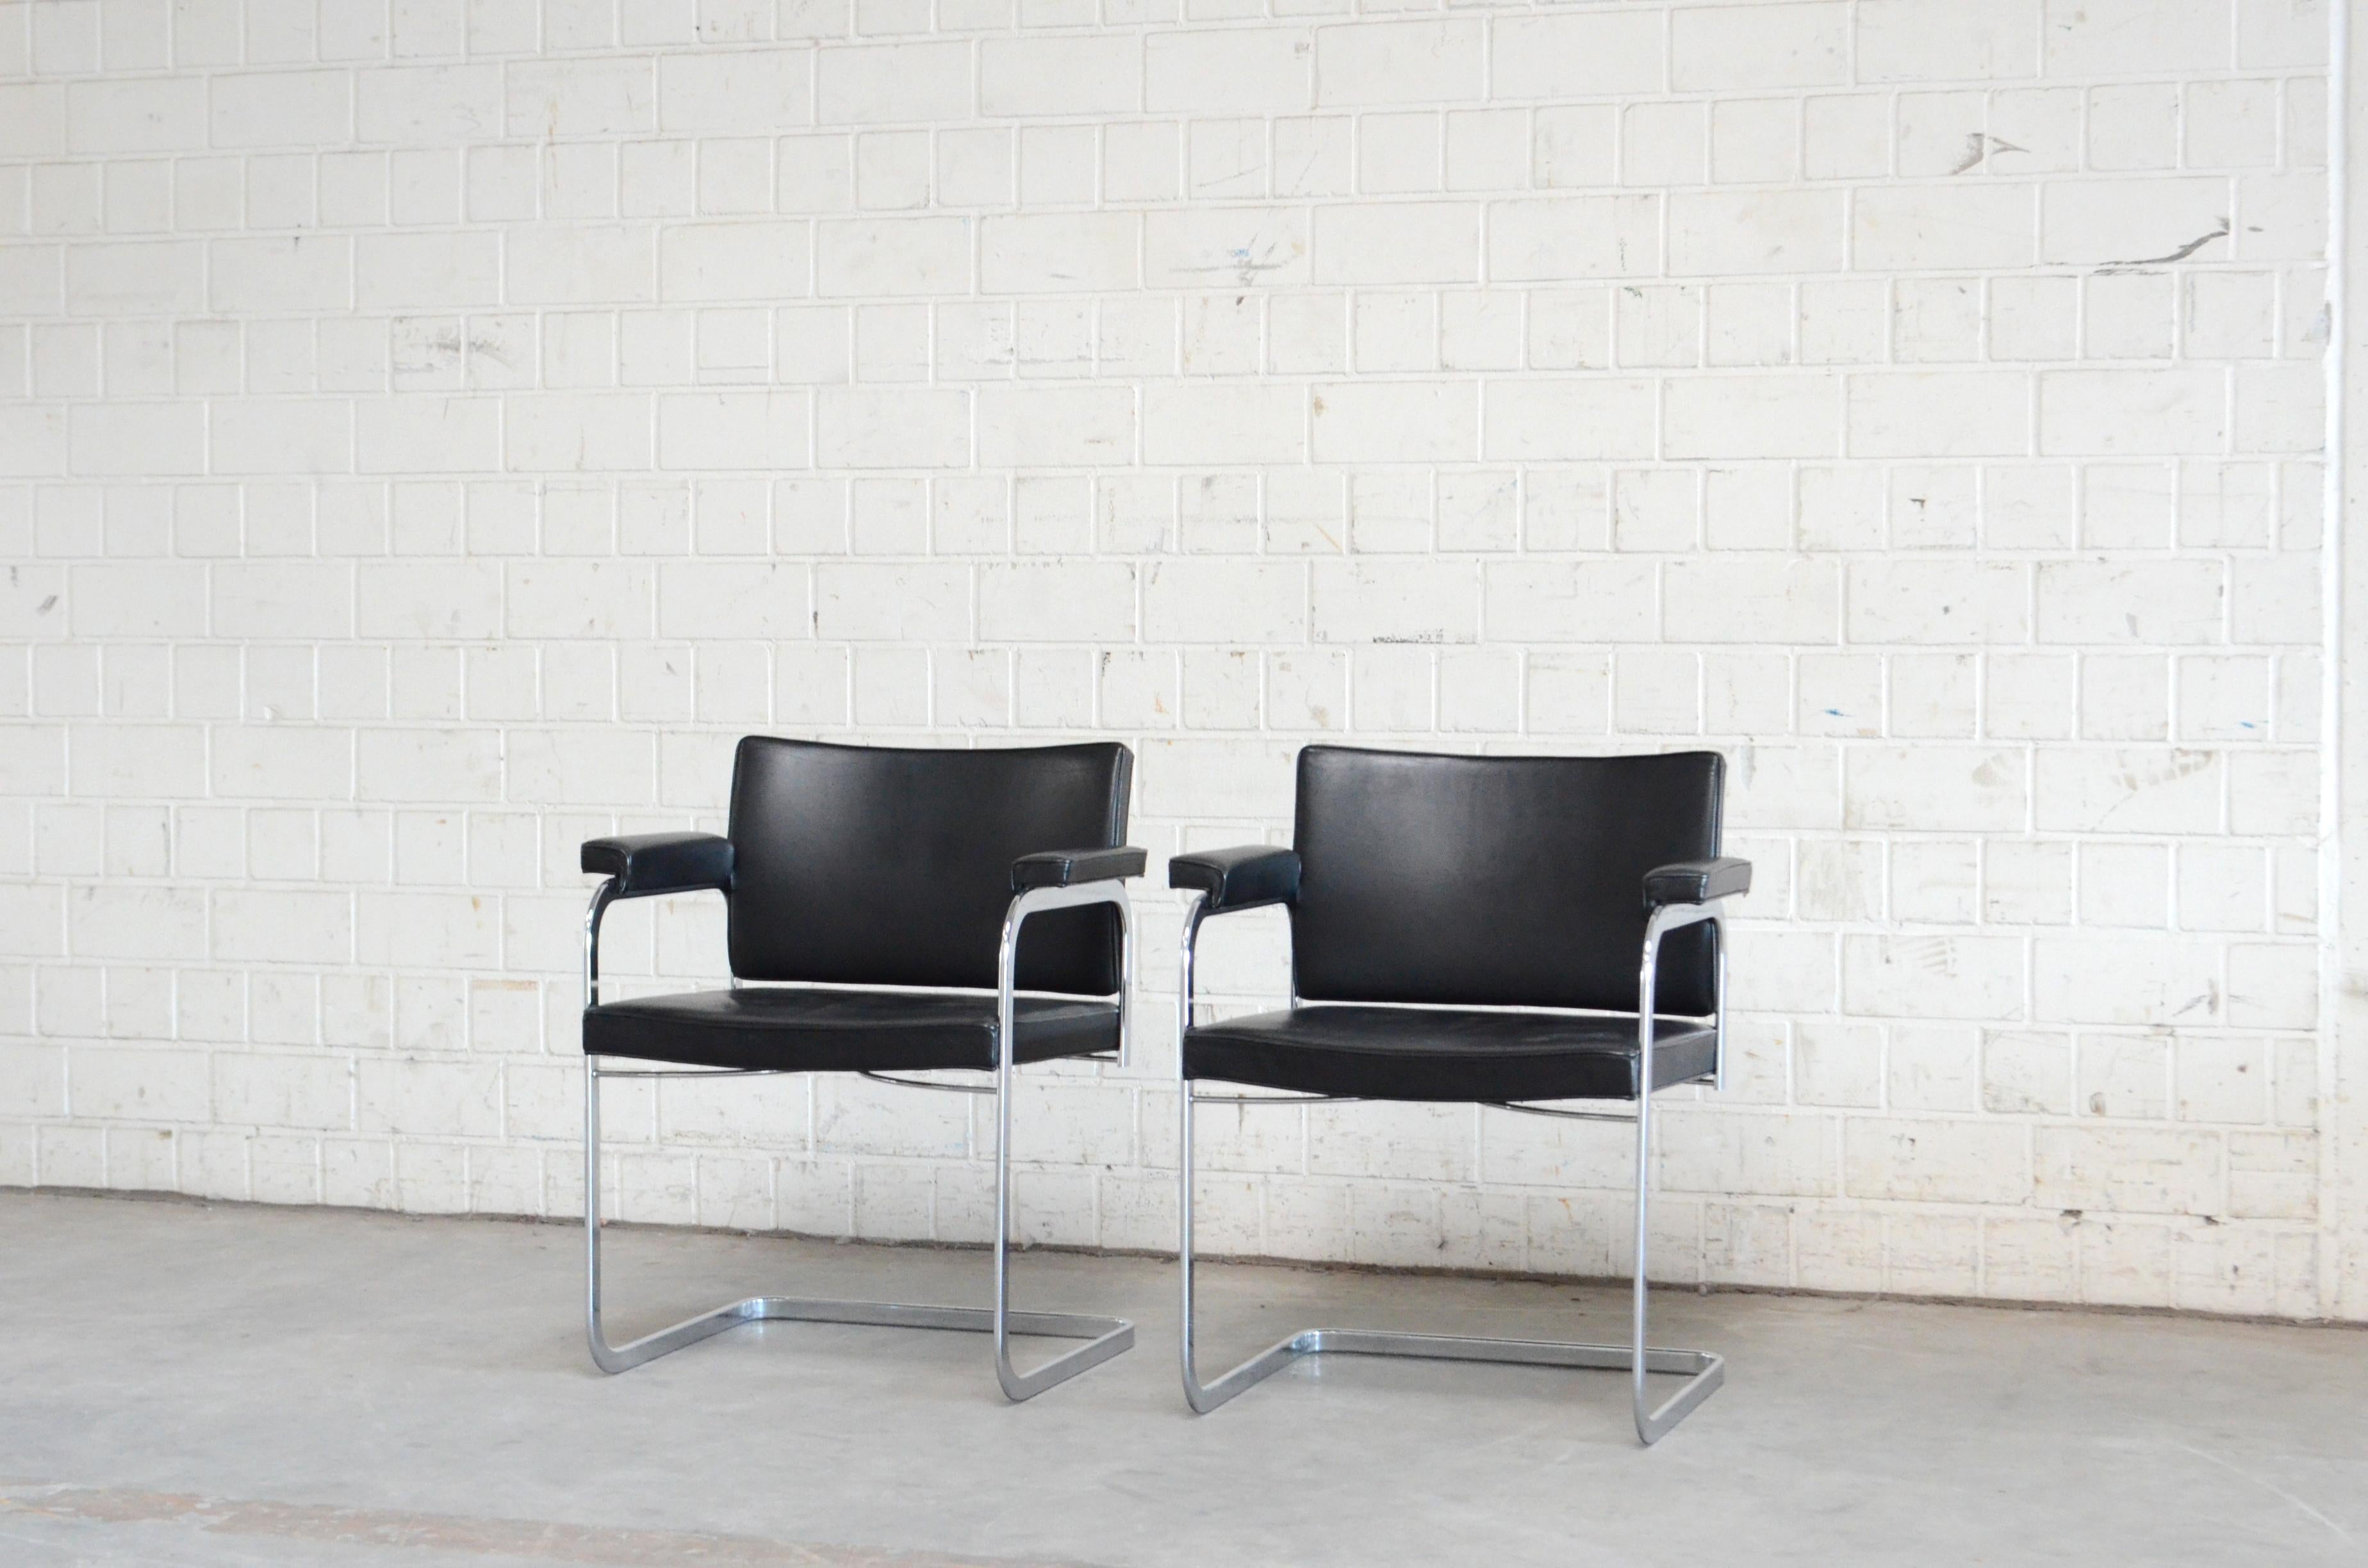 Fauteuil Robert Haussmann RH 305 design de 1957 et fabriqué par De Sede.
Cuir semi-aniline noir et cadre en acier chromé.
Il s'agit d'une chaise de conception suisse classique.
Excellent état.
Prix pour 1 chaise
Nous avons 2 chaises en magasin.